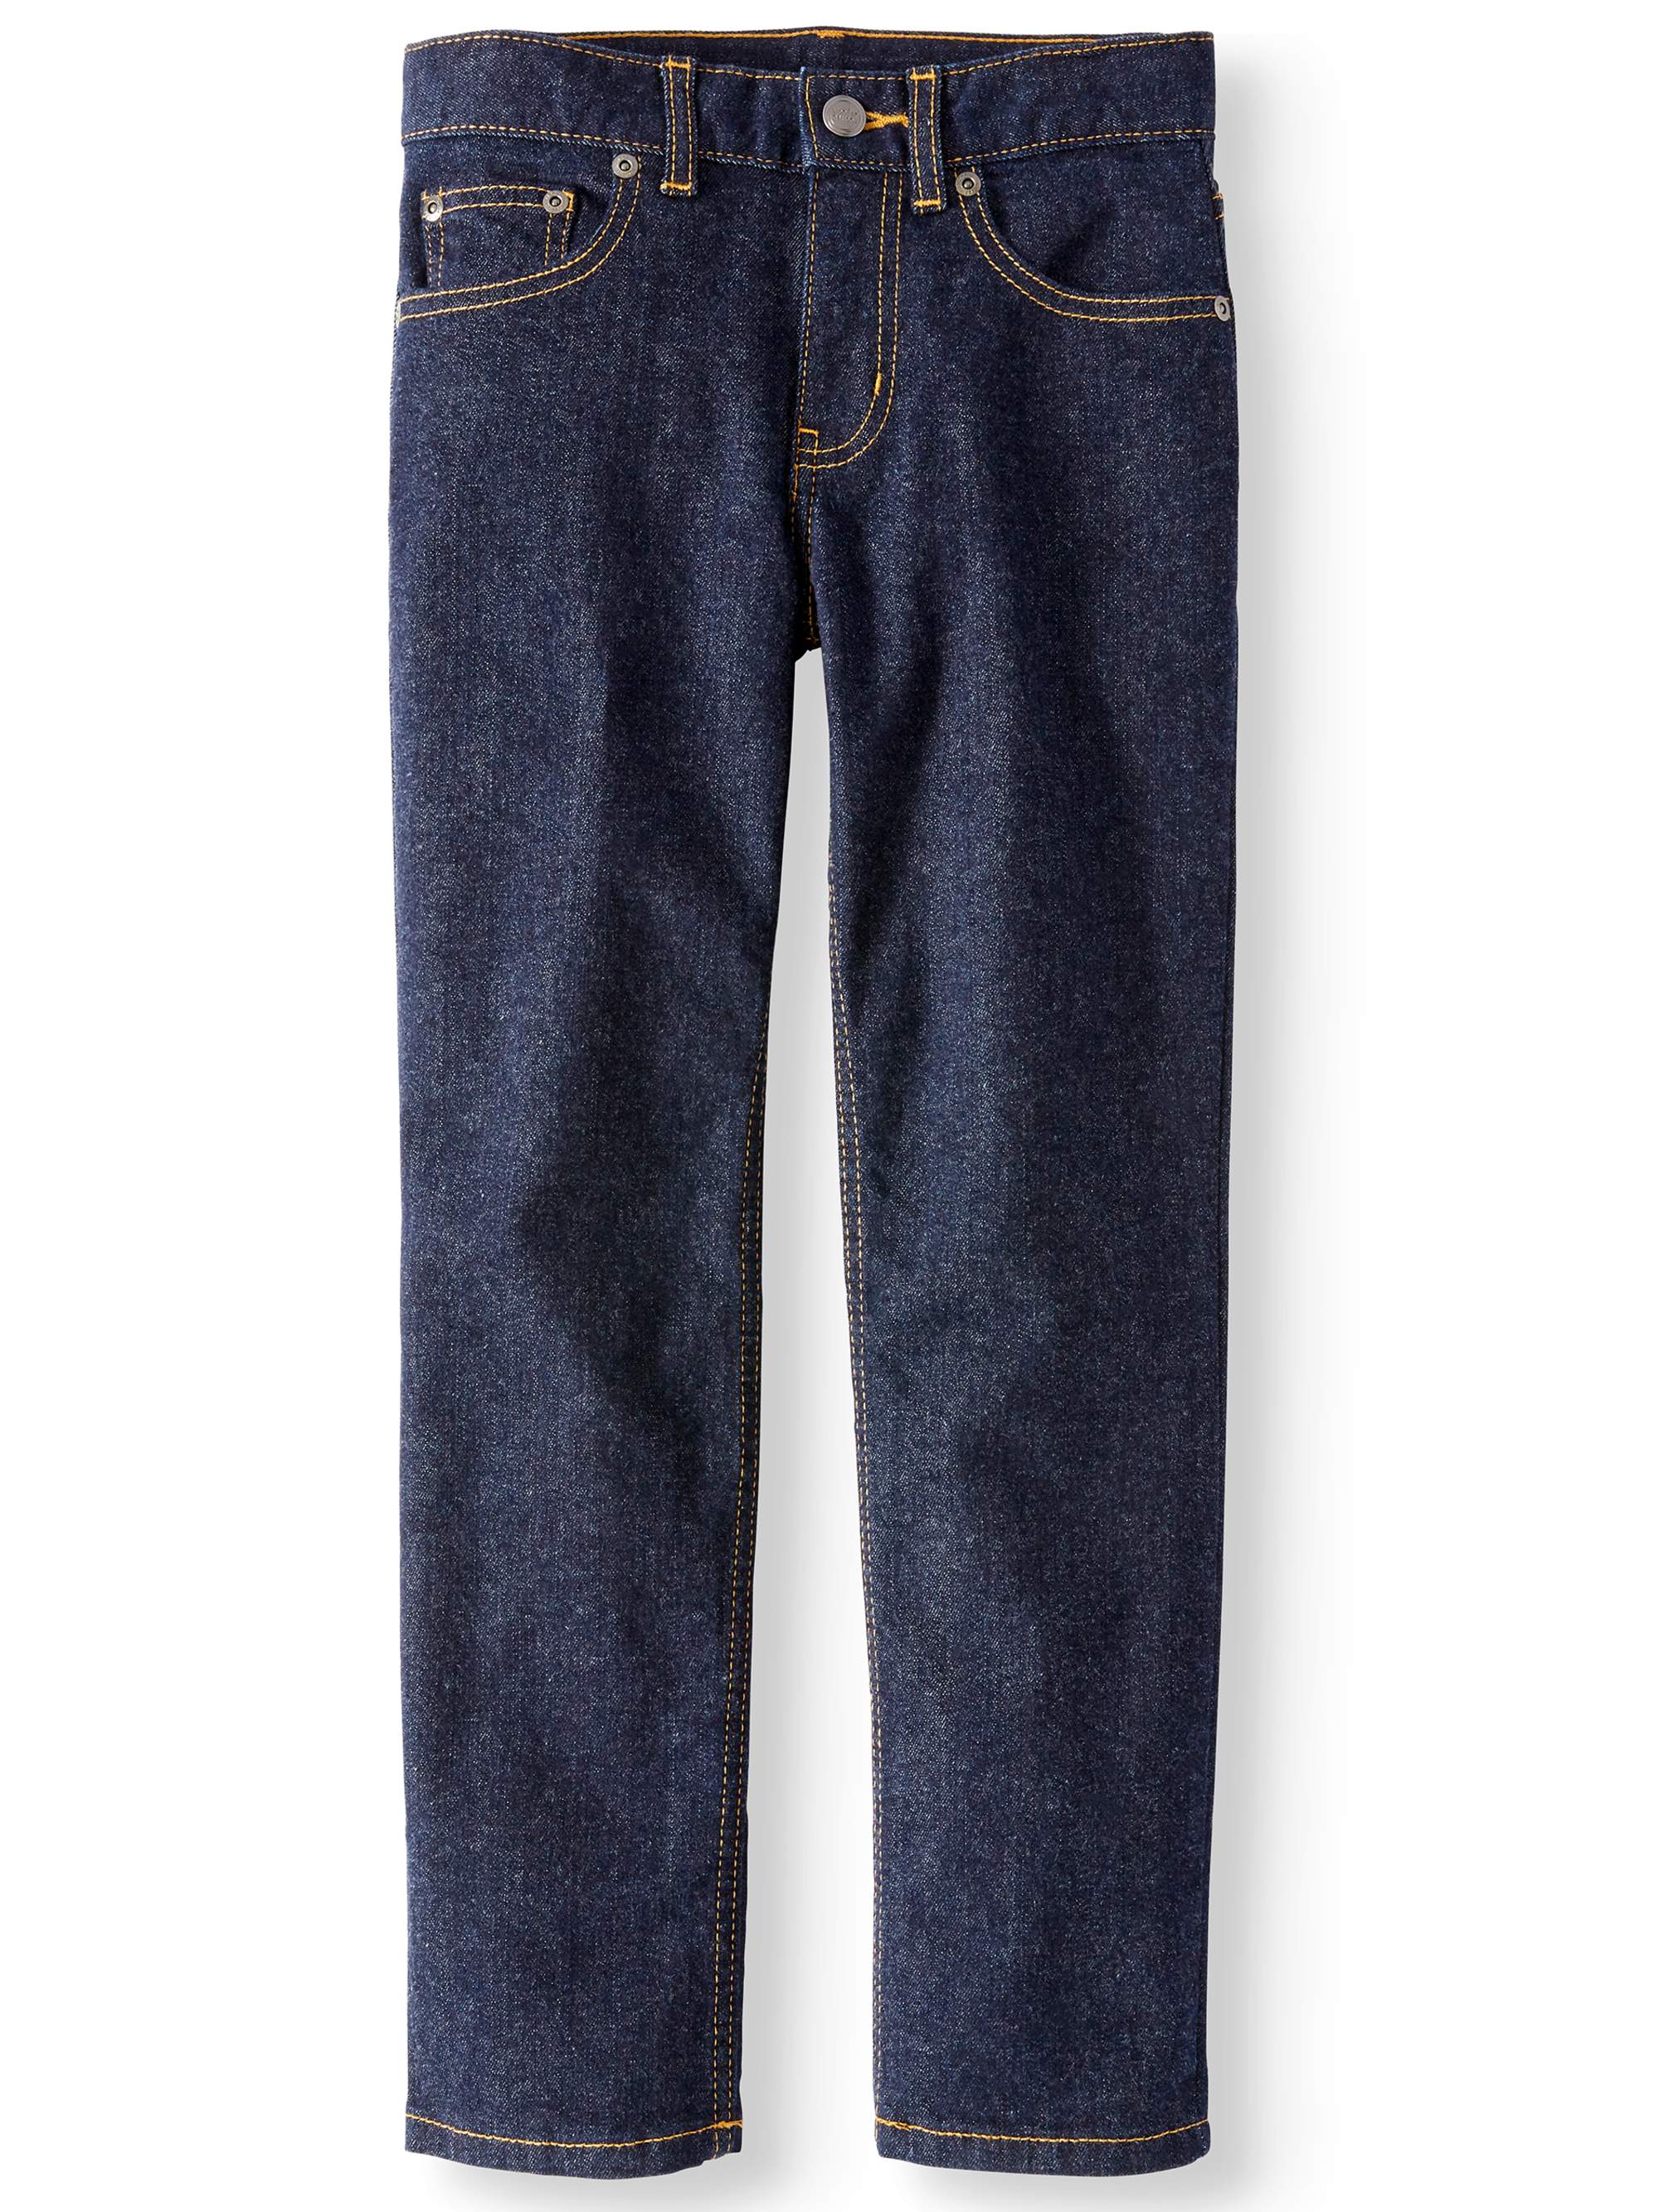 Wonder Nation Boys Straight Stretch Jeans, Sizes 4-16 & Husky - image 1 of 3